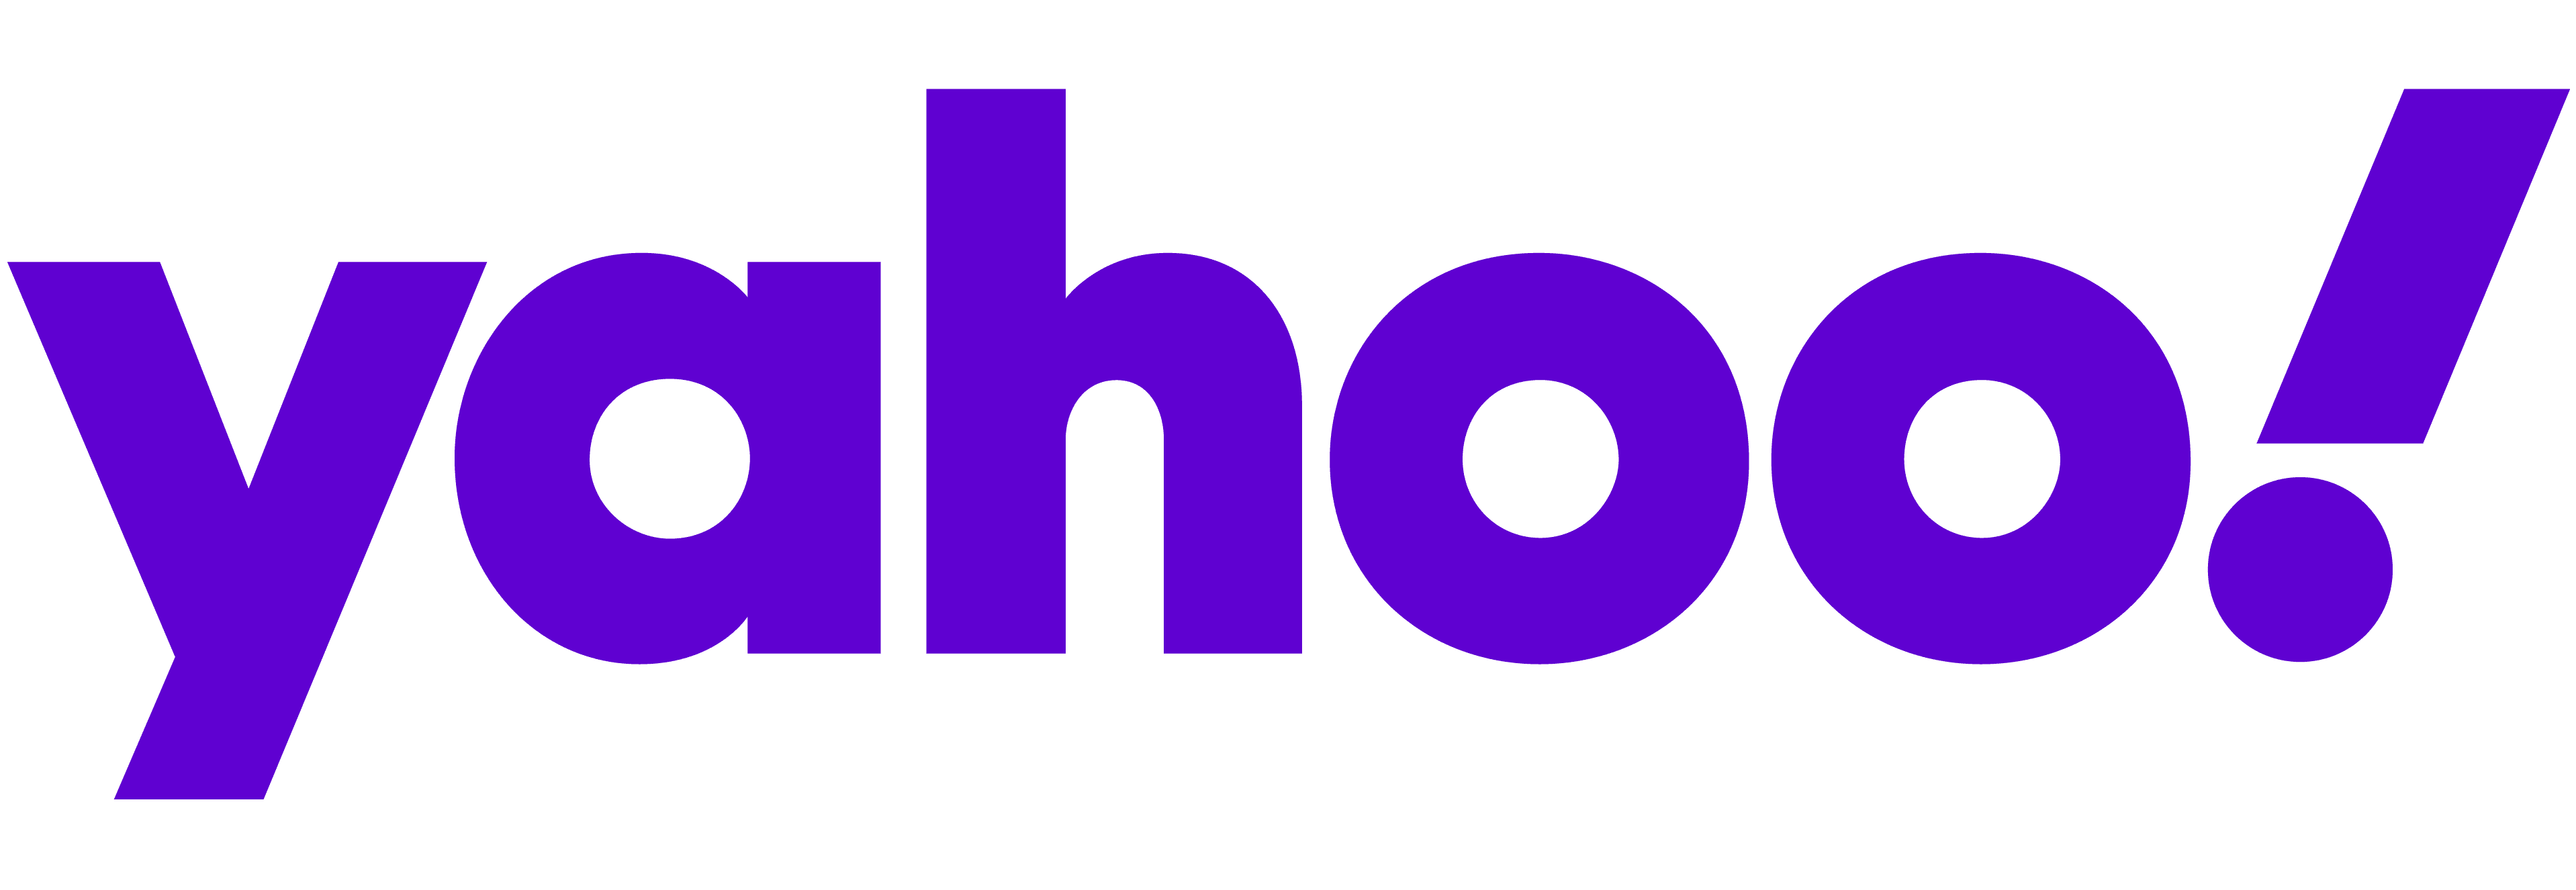 yahoo logo 